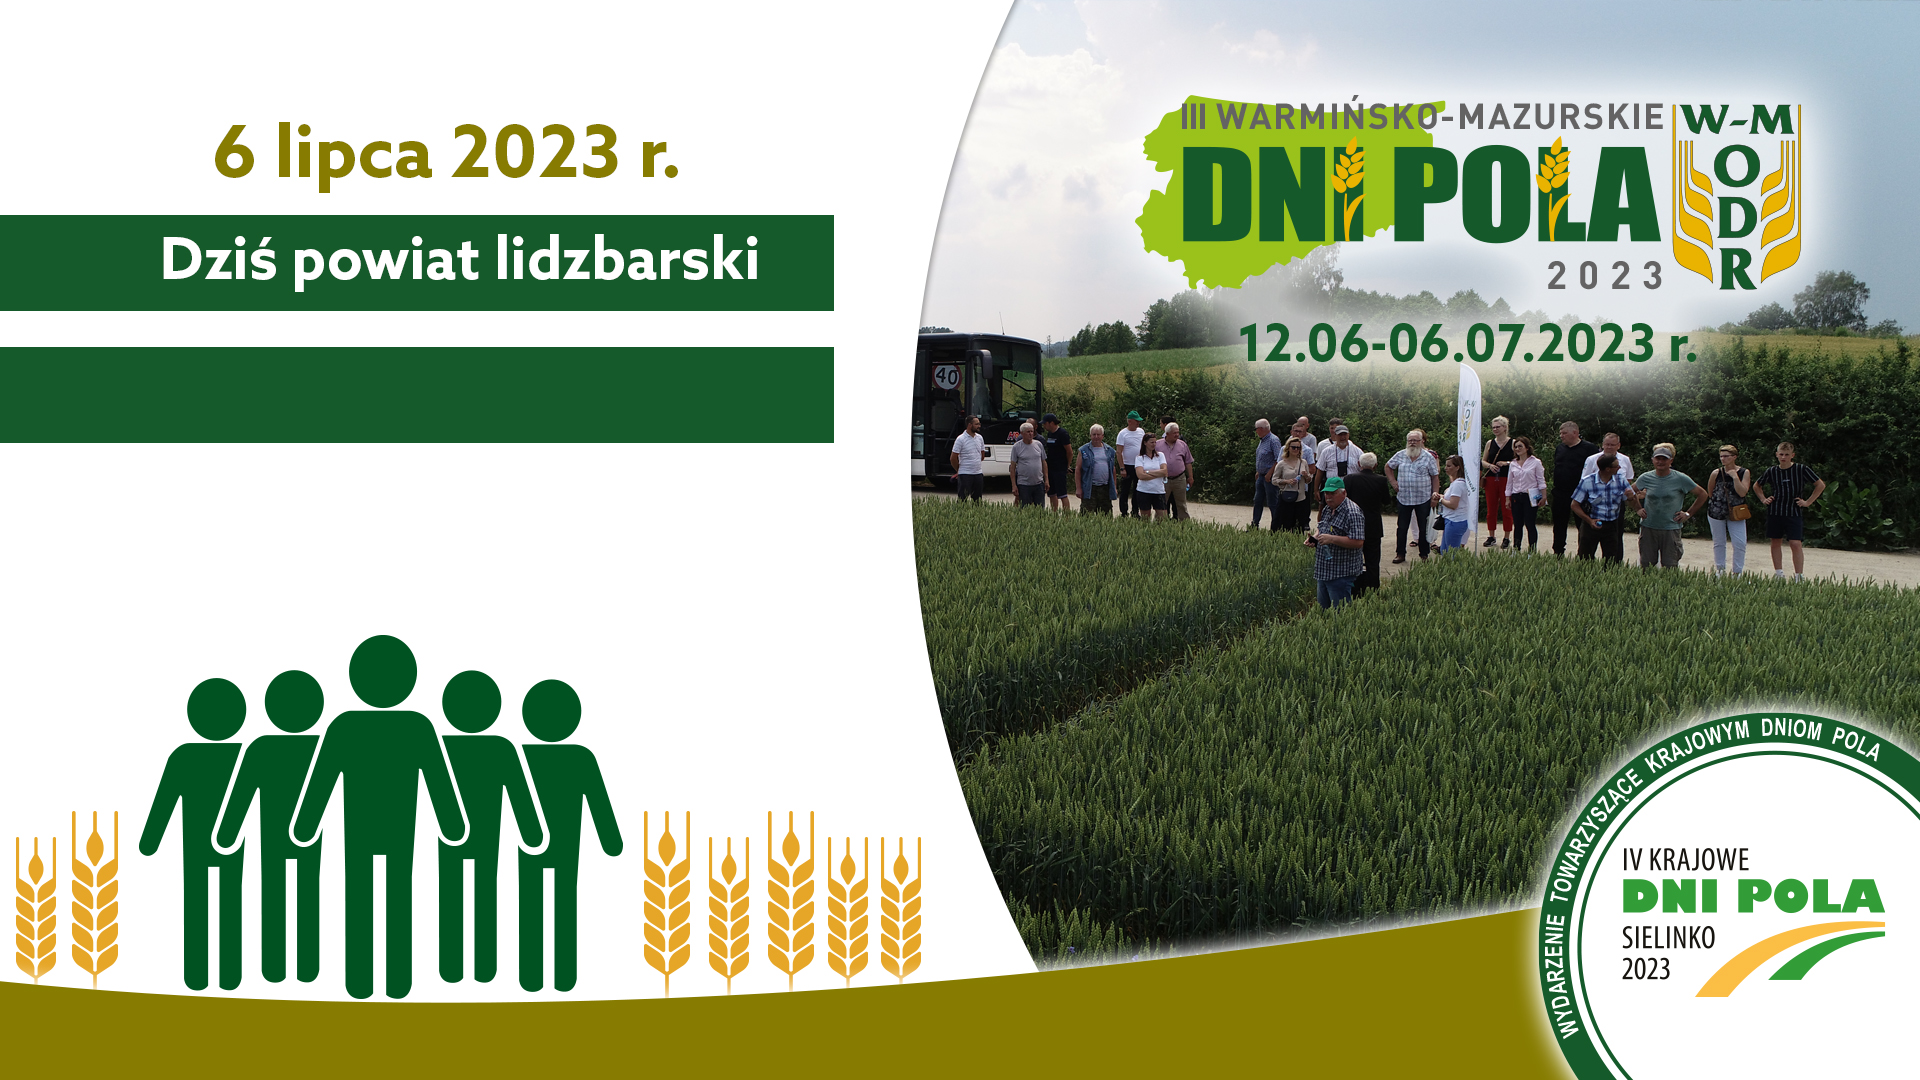 Ostatnie spotkanie w ramach III Warmińsko-Mazurskich Dni Pola - powiat lidzbarski, 06.07.2023